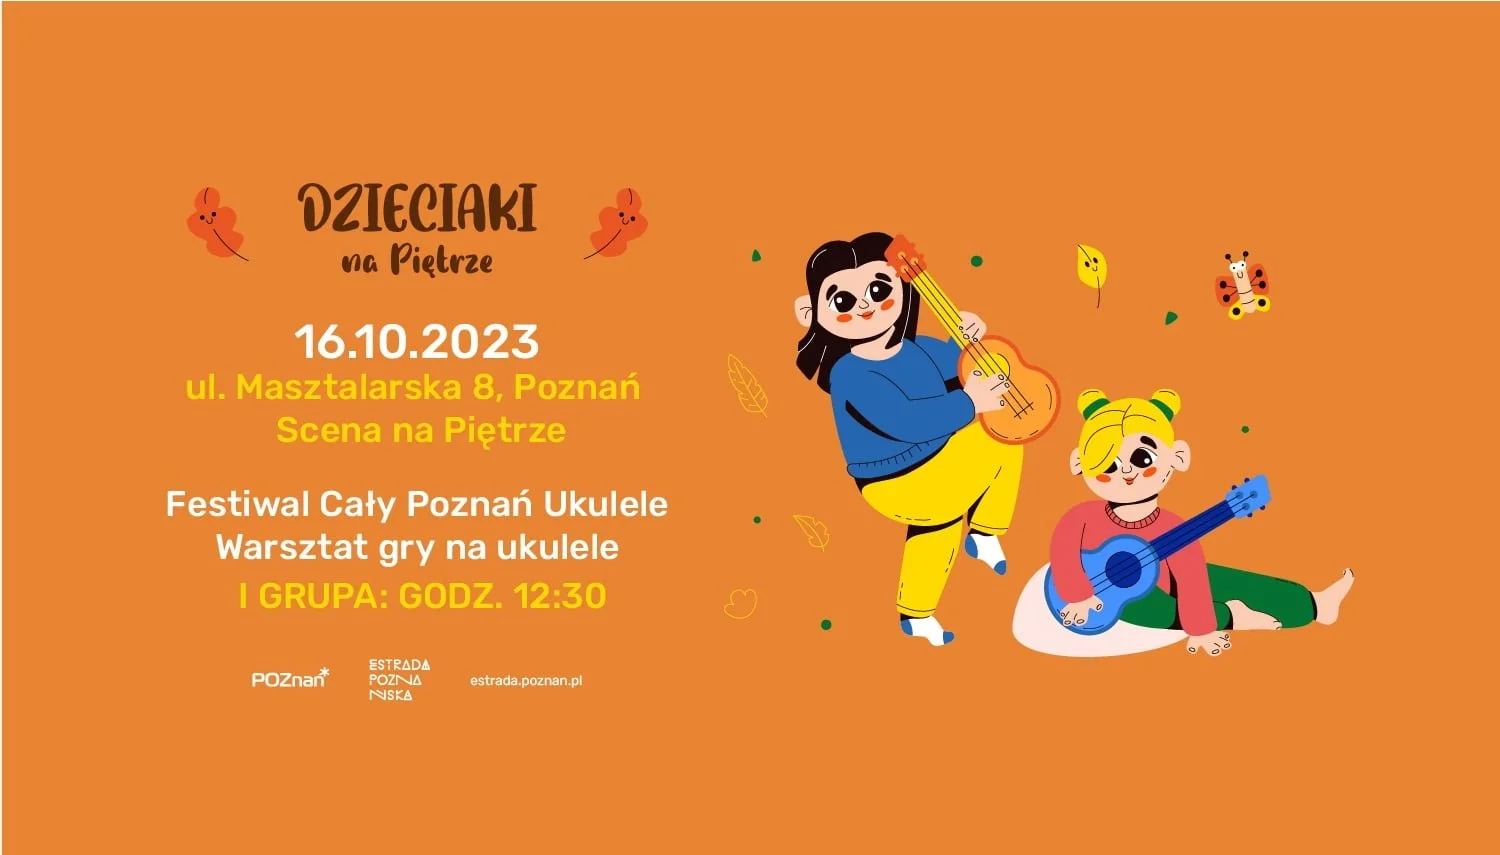 Festiwal Cały Poznań Ukulele | Warsztat gry na ukulele (grupa I) | 16.10.2023 | Dzieciaki na Piętrze 2023 | Poznań (518983)